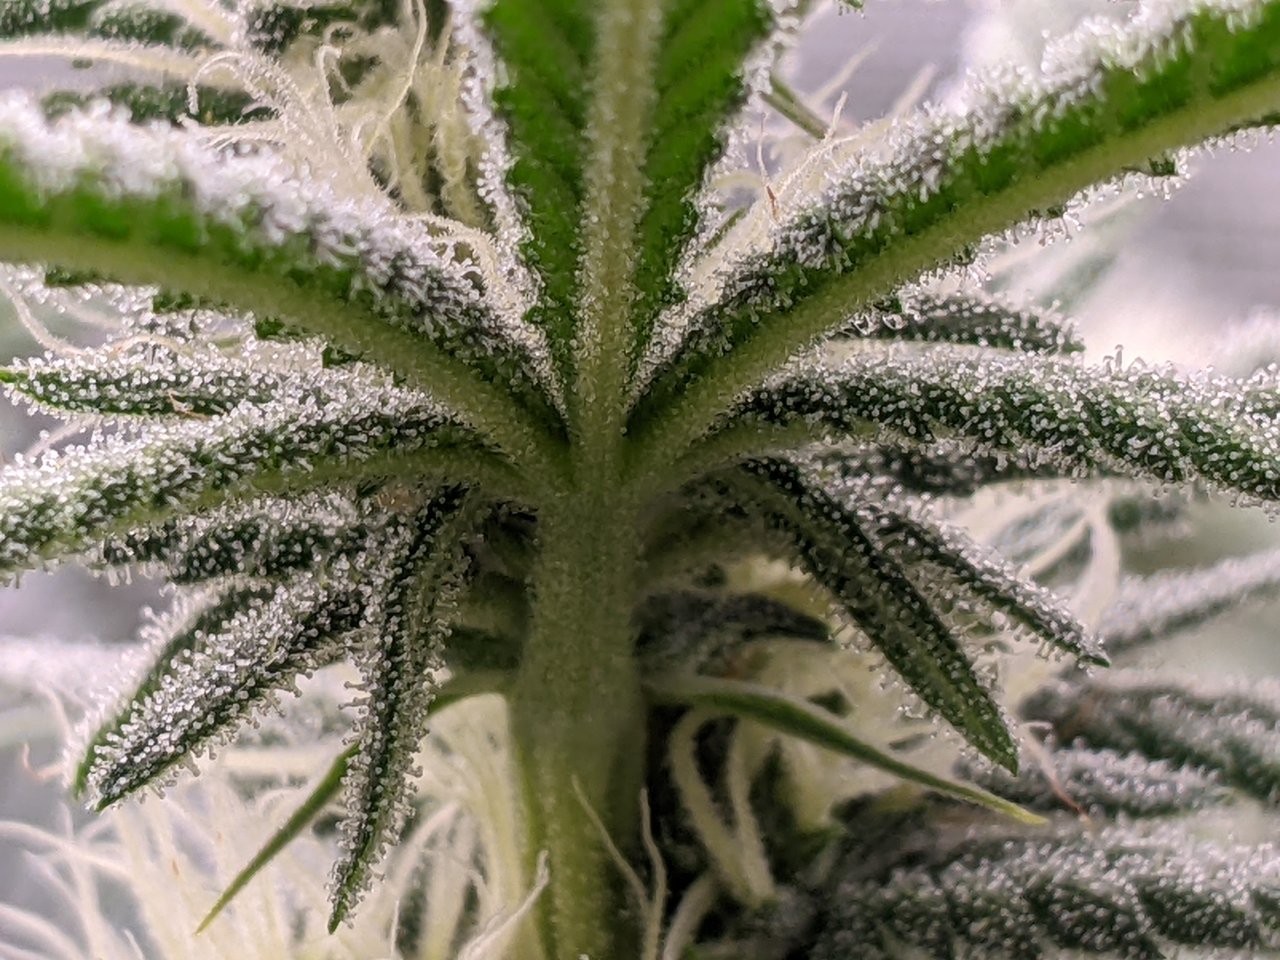 Grandmommy Purple - Herbies - Frosty Palm Tree - Flower week 3